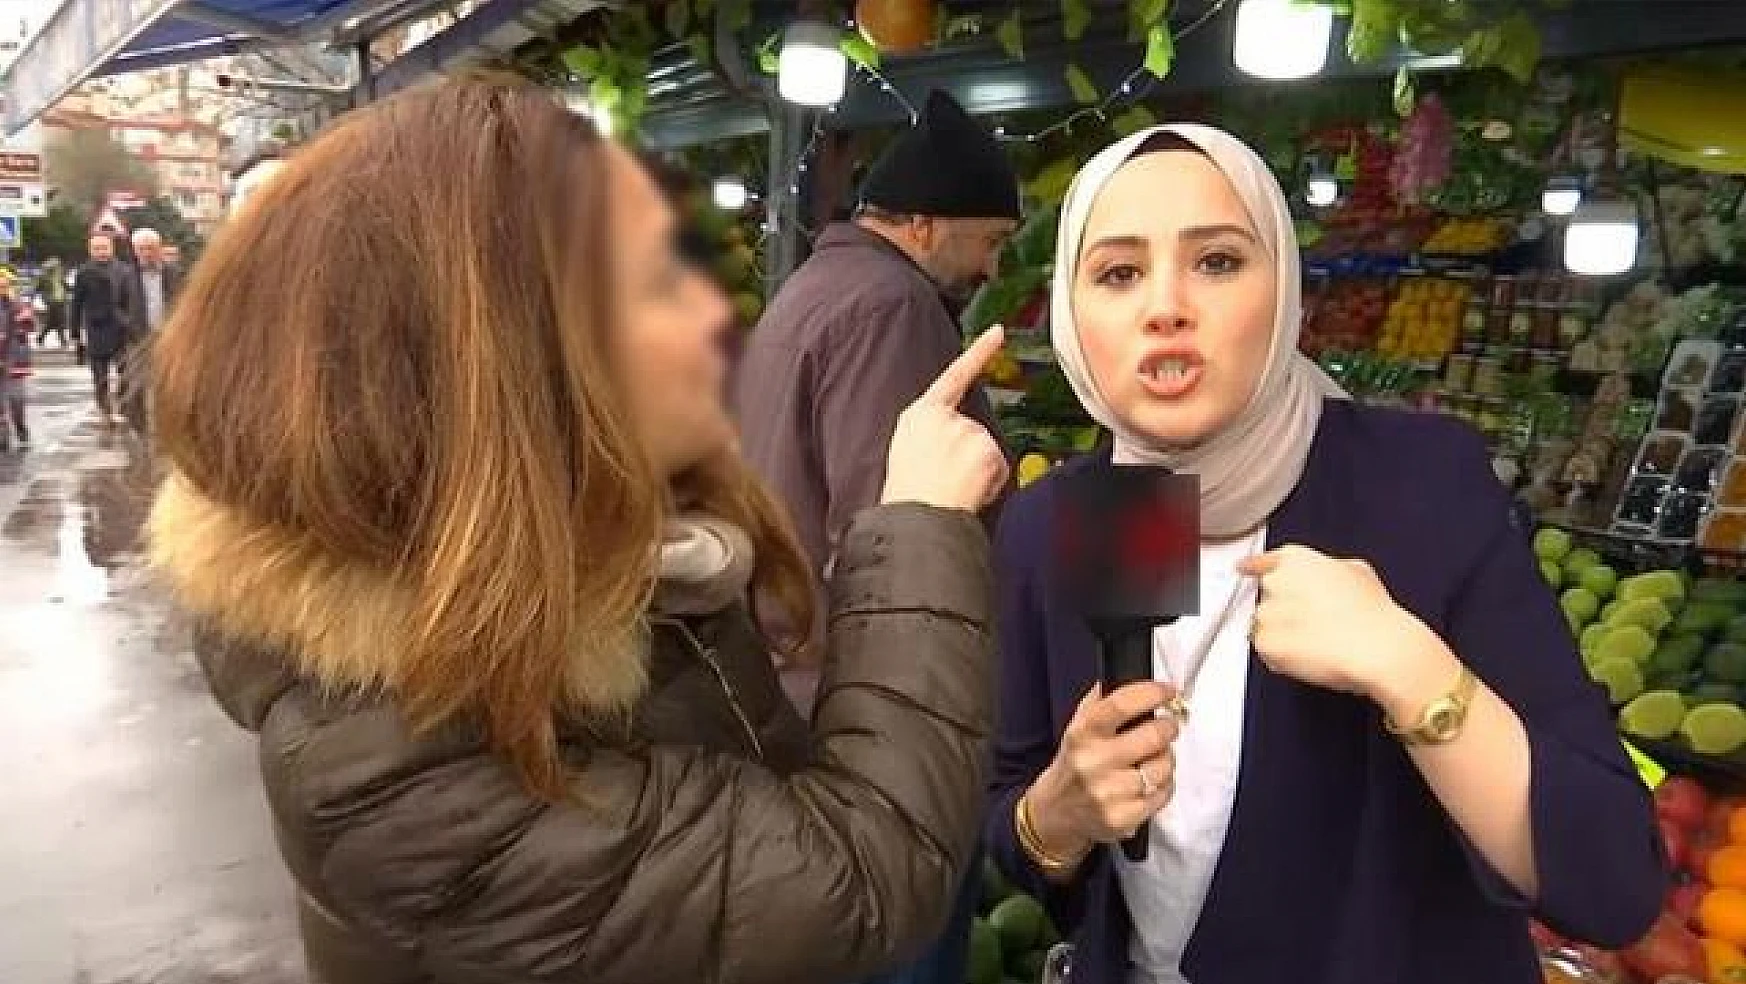 Röportaj yapan muhabire 'başörtüsü' üzerinden hakaret